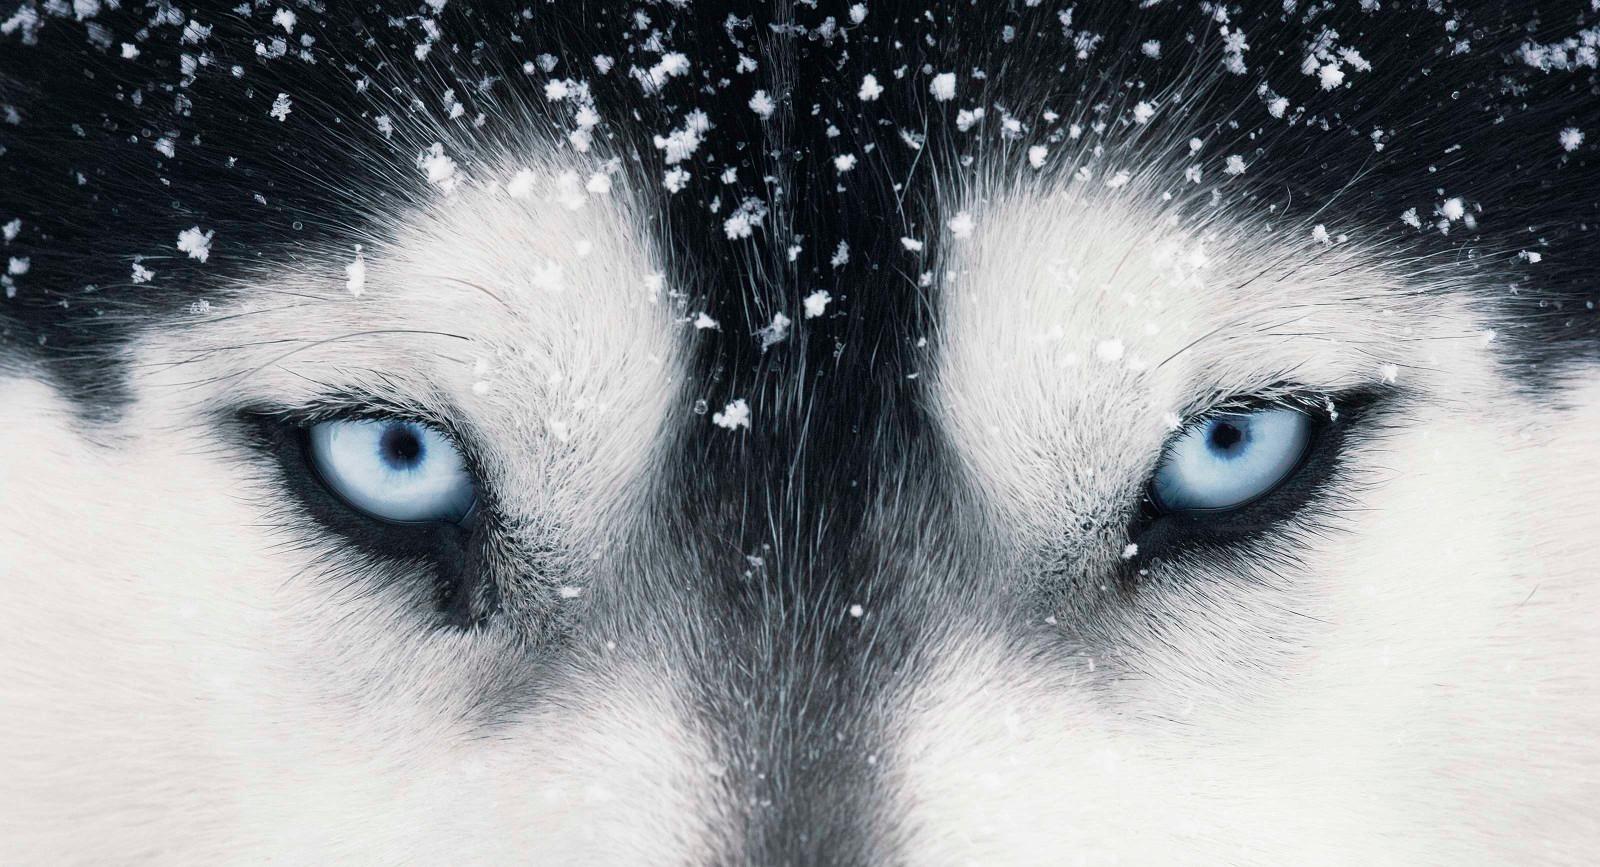 Zeitgenössische britische Kunst, Tierfotografie, Hunde – Kleopatra-Auge von Tim Flach